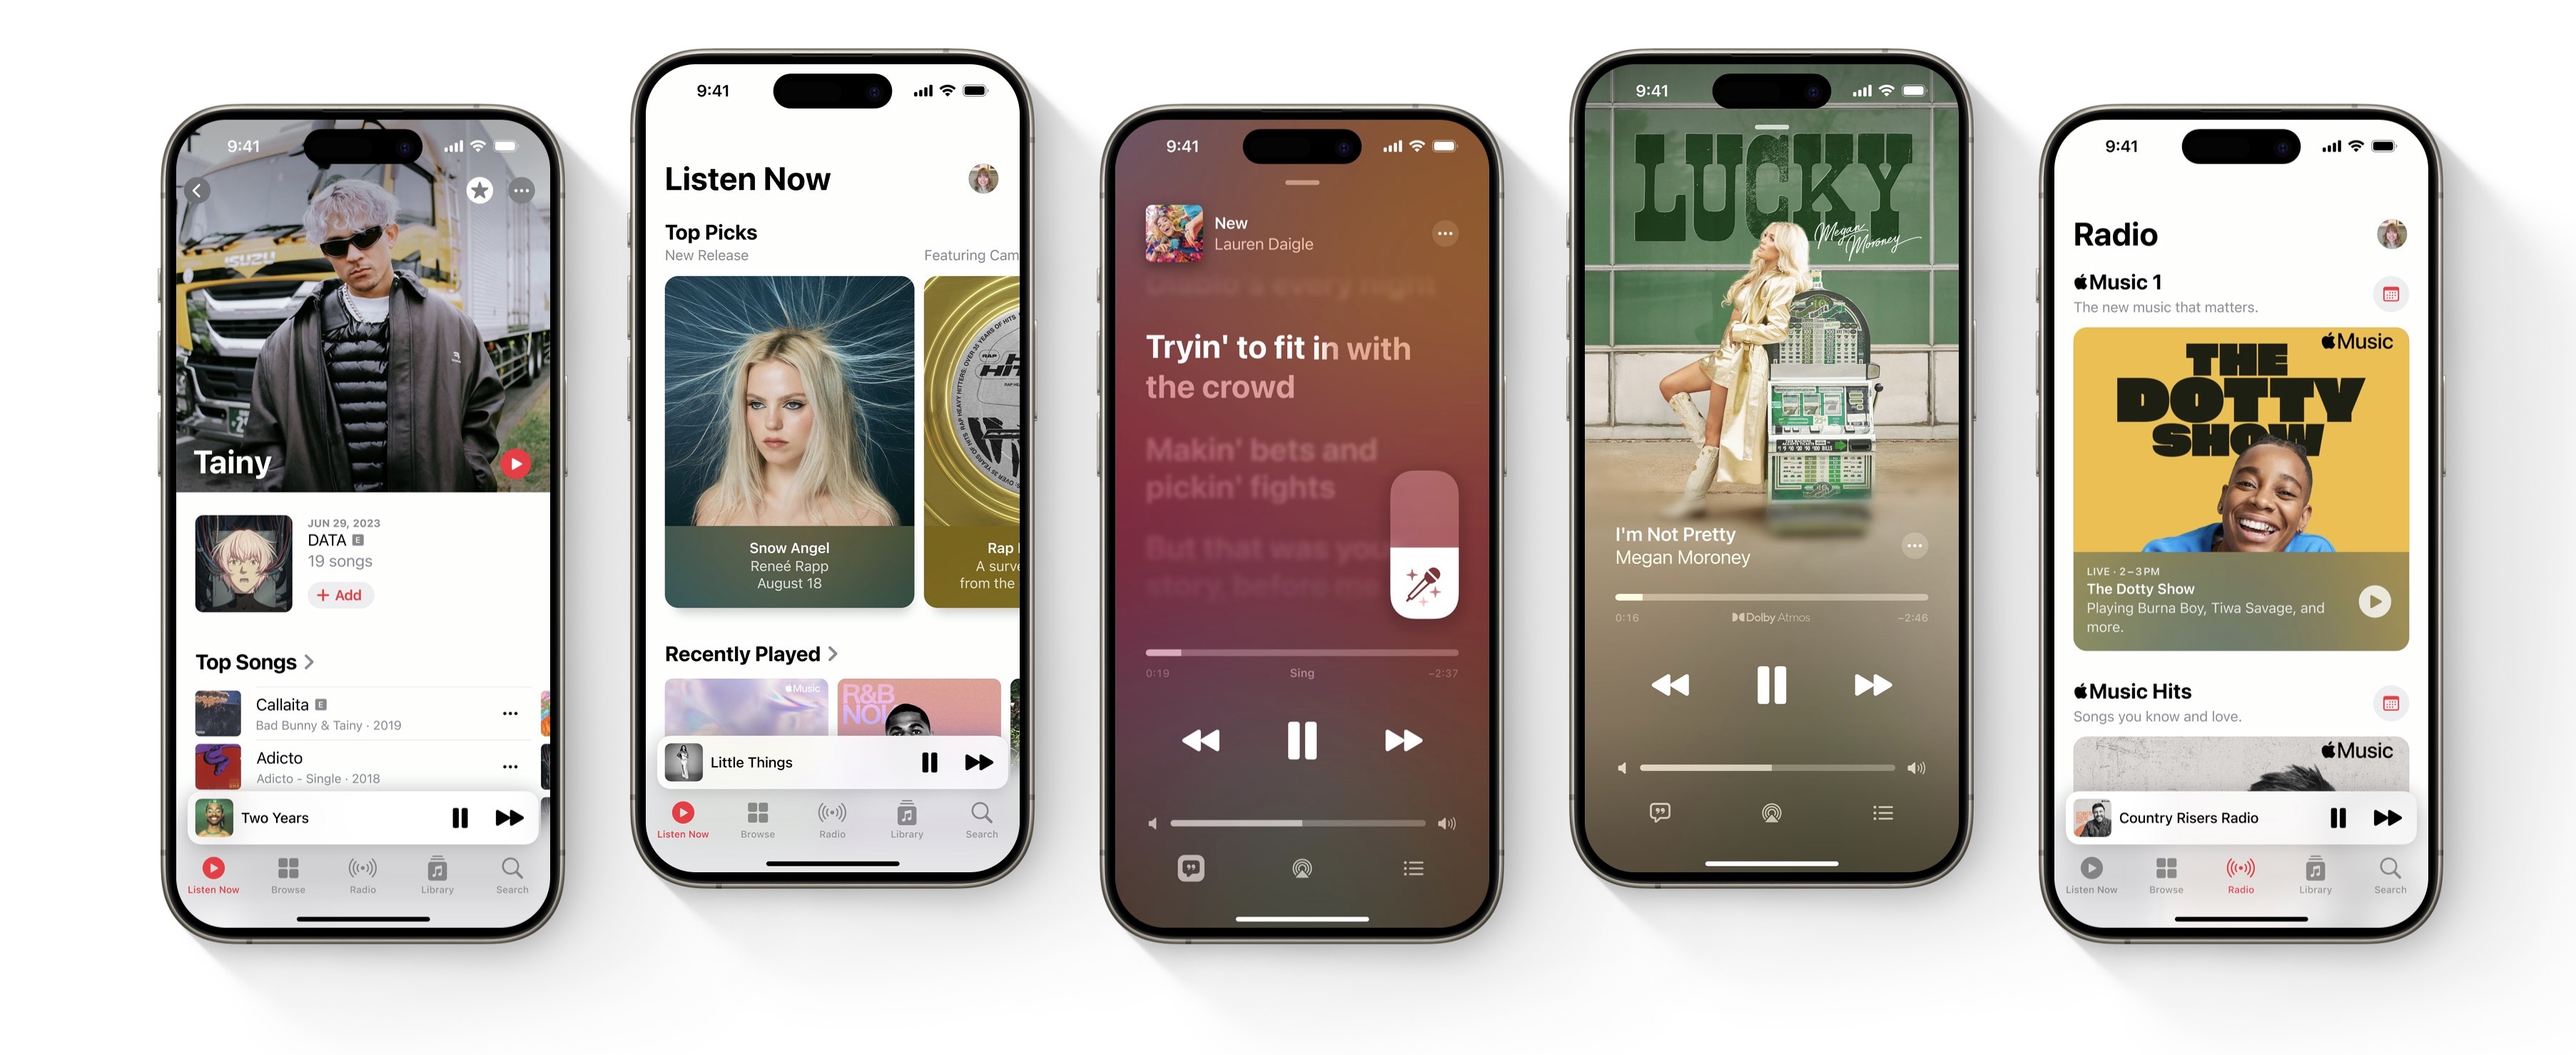 Пользователи Apple Music смогут переносить музыку даже из конкурирующих сервисов